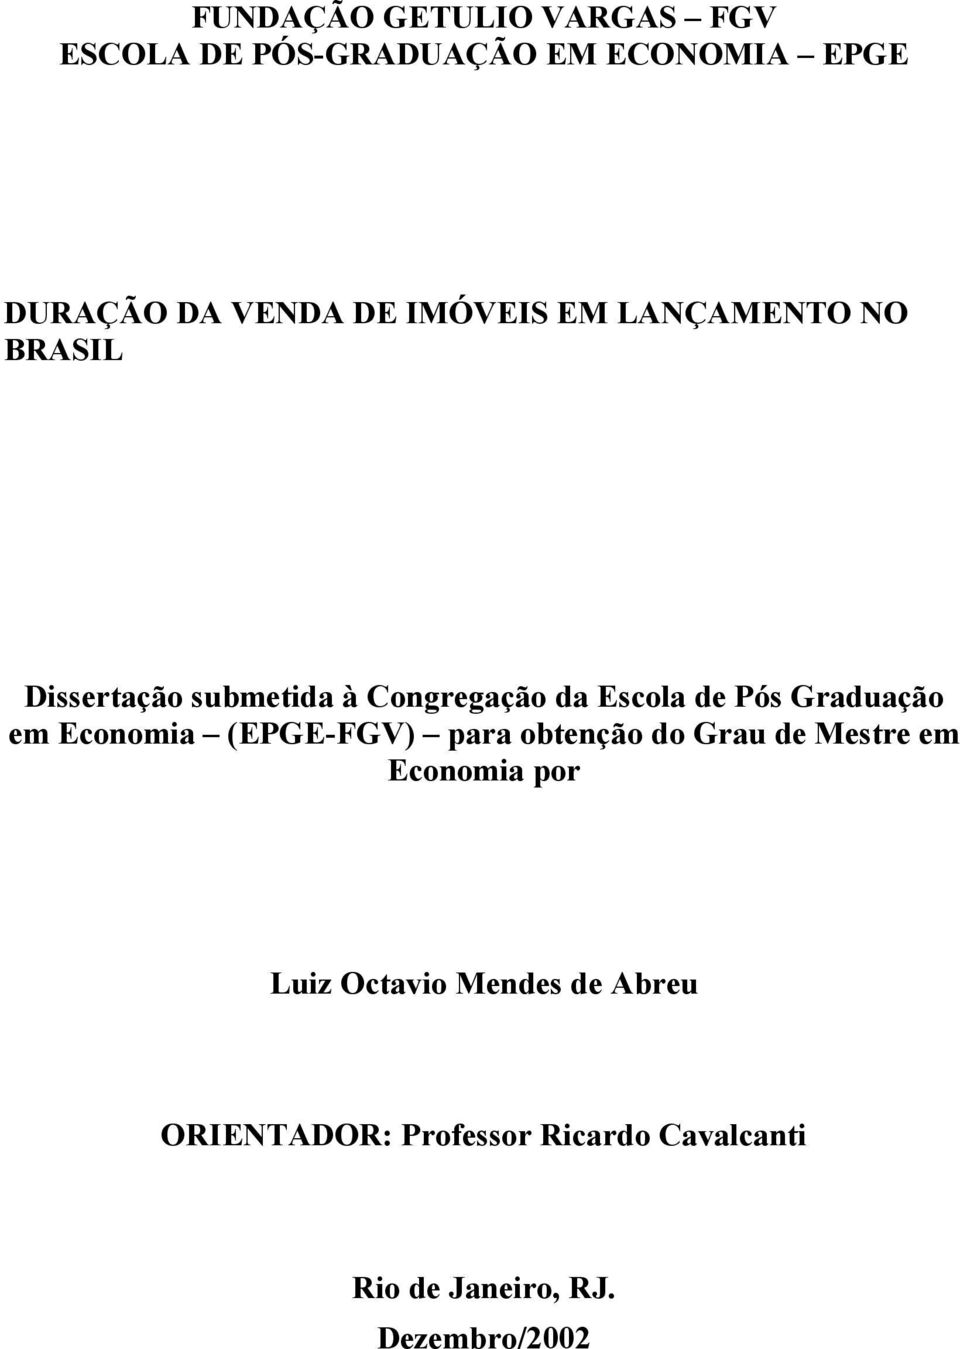 Graduação em Economia (EGE-FGV) para obenção do Grau de Mesre em Economia por Luiz